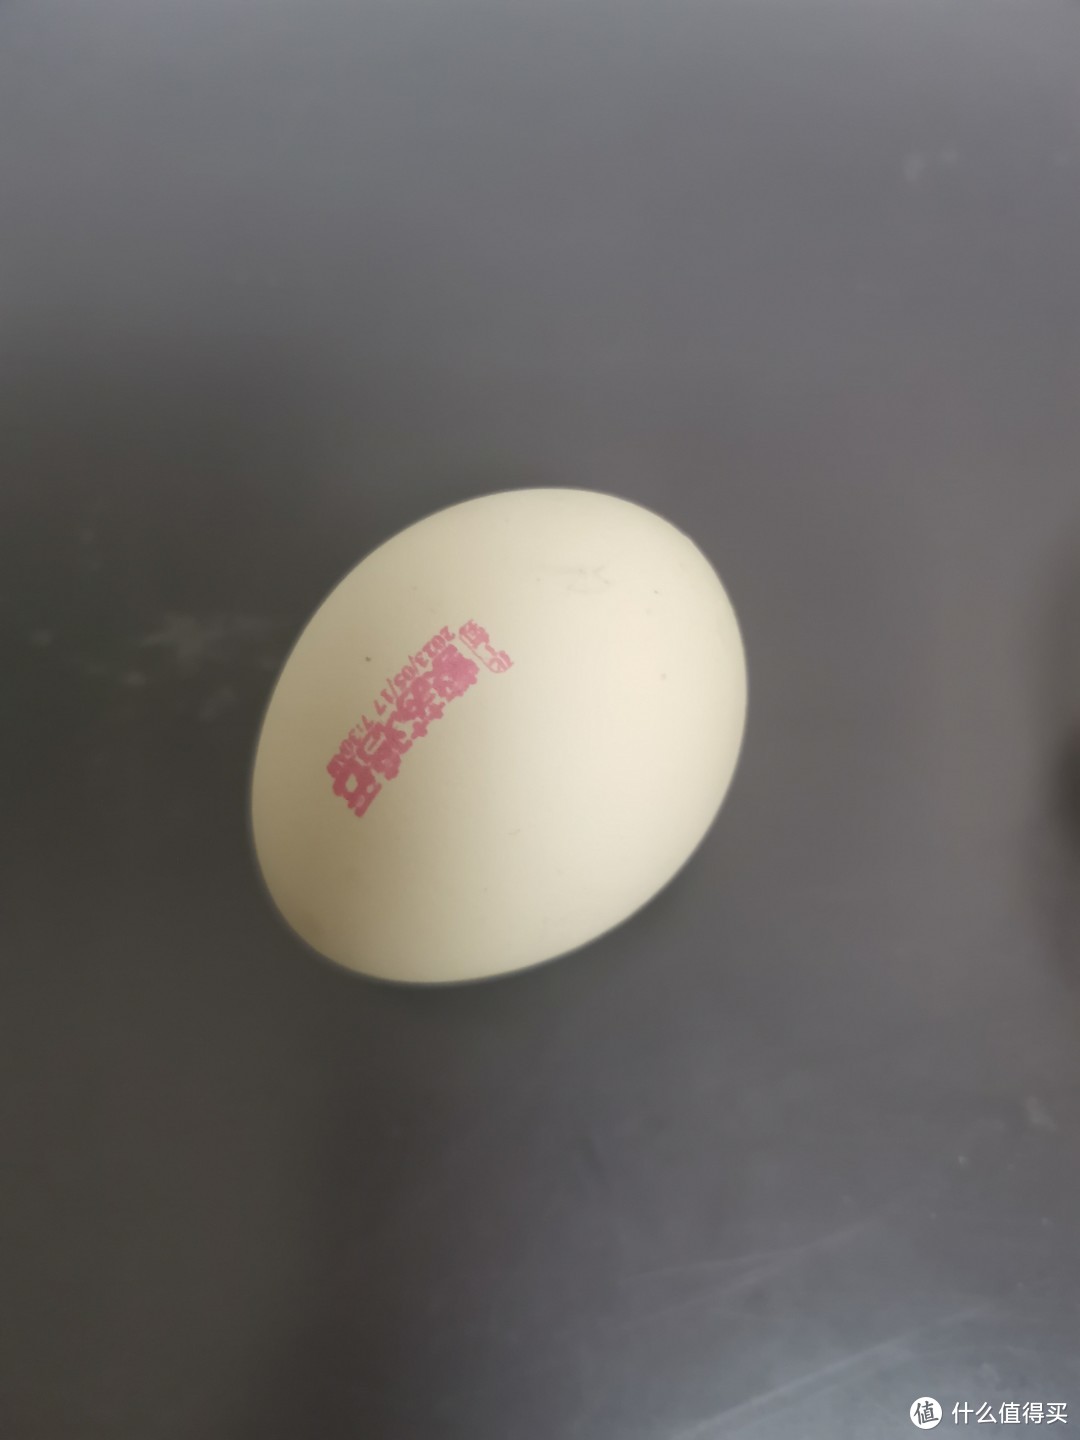 紫苏鸡蛋